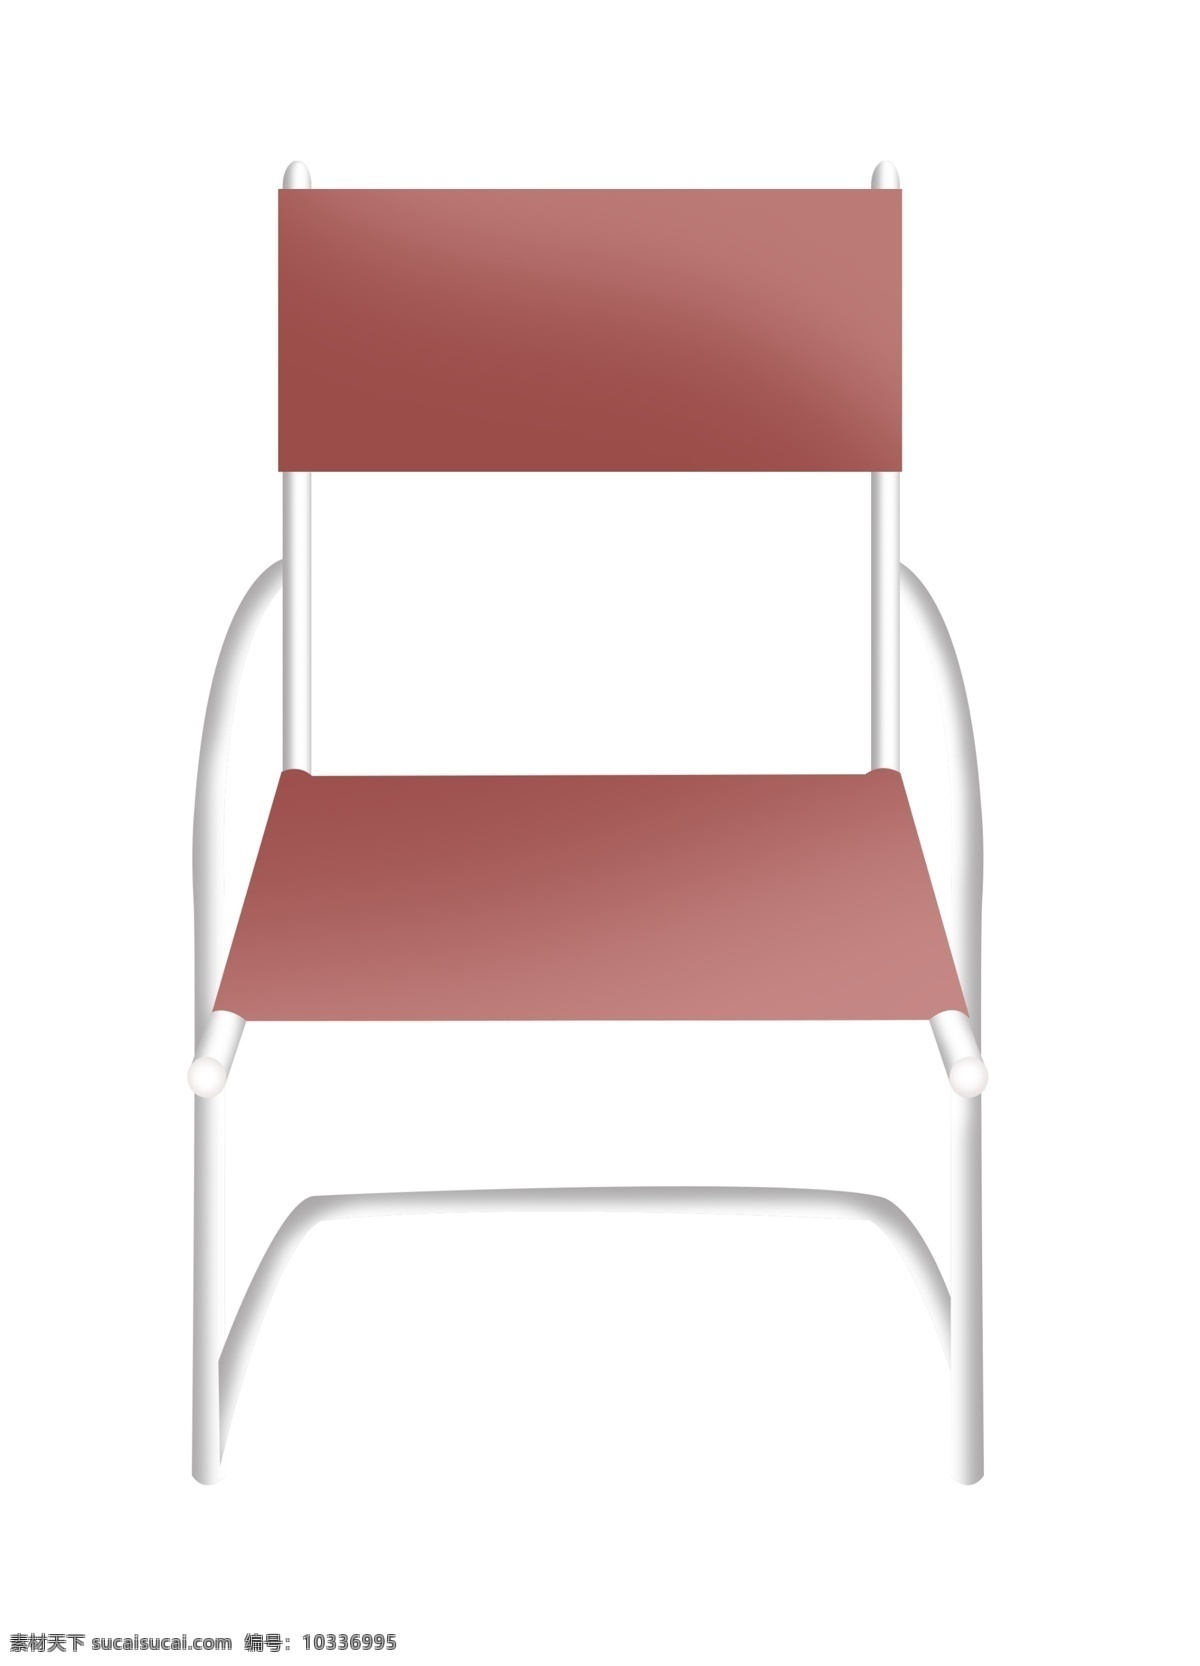 家具 椅子 装饰 插画 家具椅子 粉色的椅子 漂亮的椅子 创意椅子 椅子装饰 椅子插画 卡通椅子